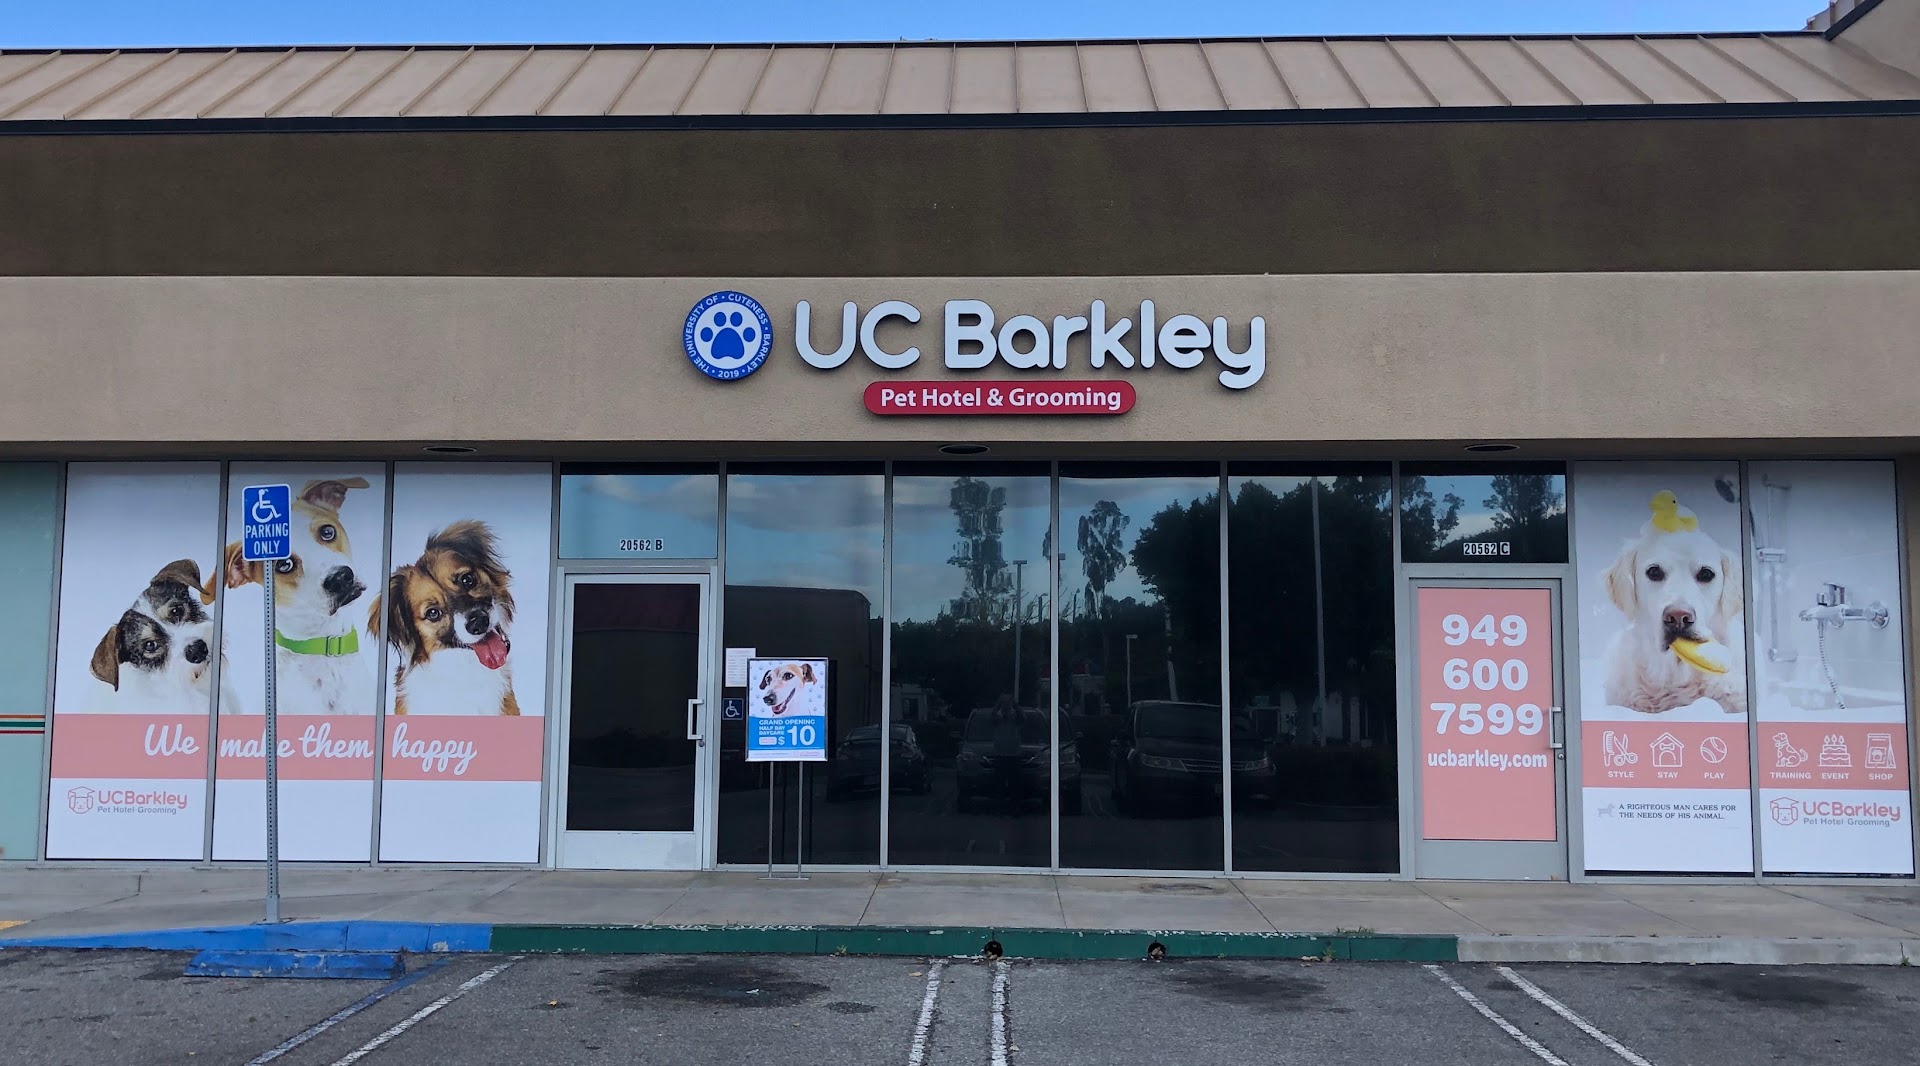 UC Barkley